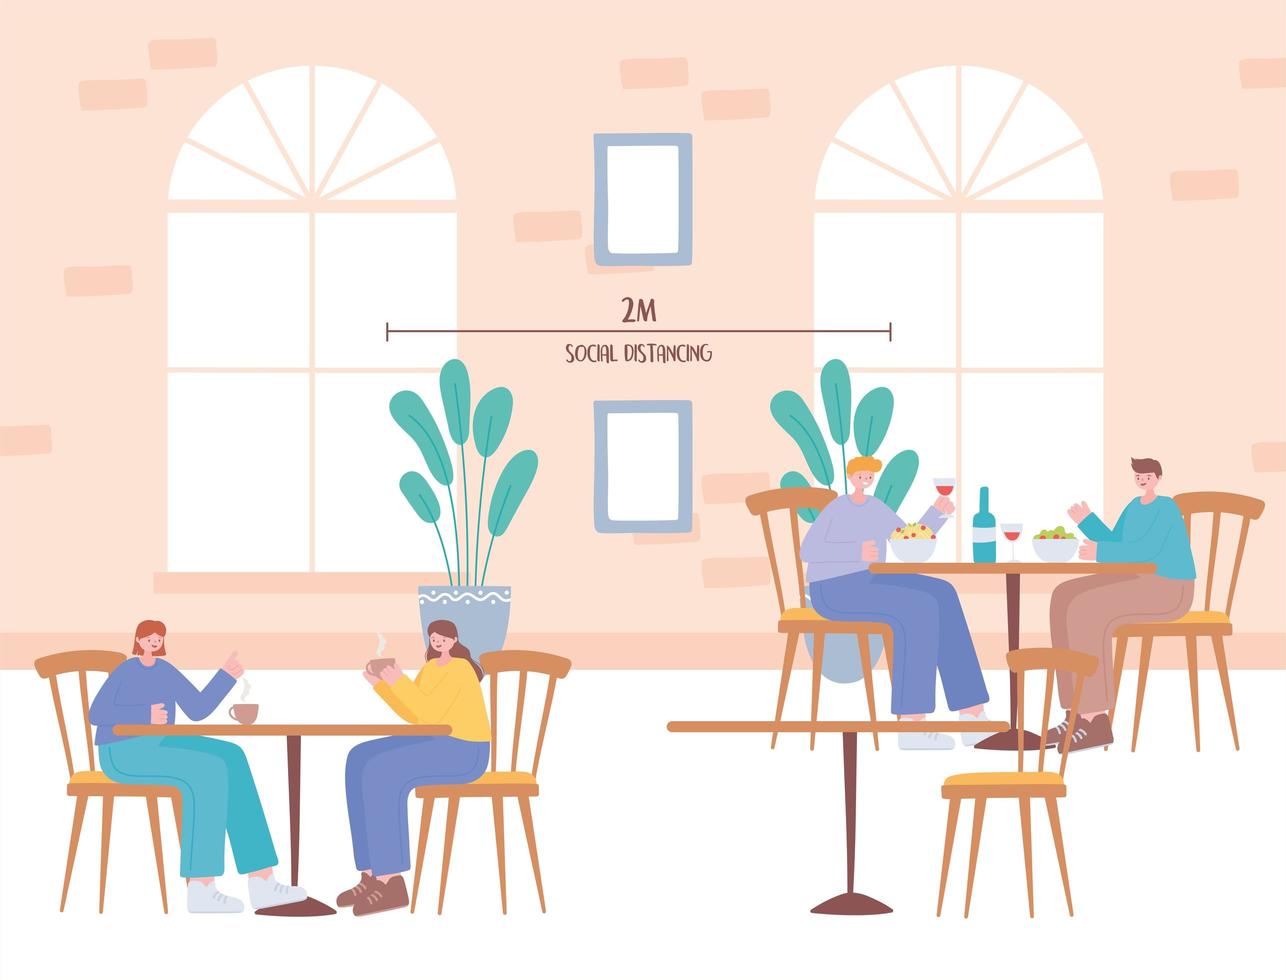 mensen die eten en sociale afstand nemen in een restaurant vector